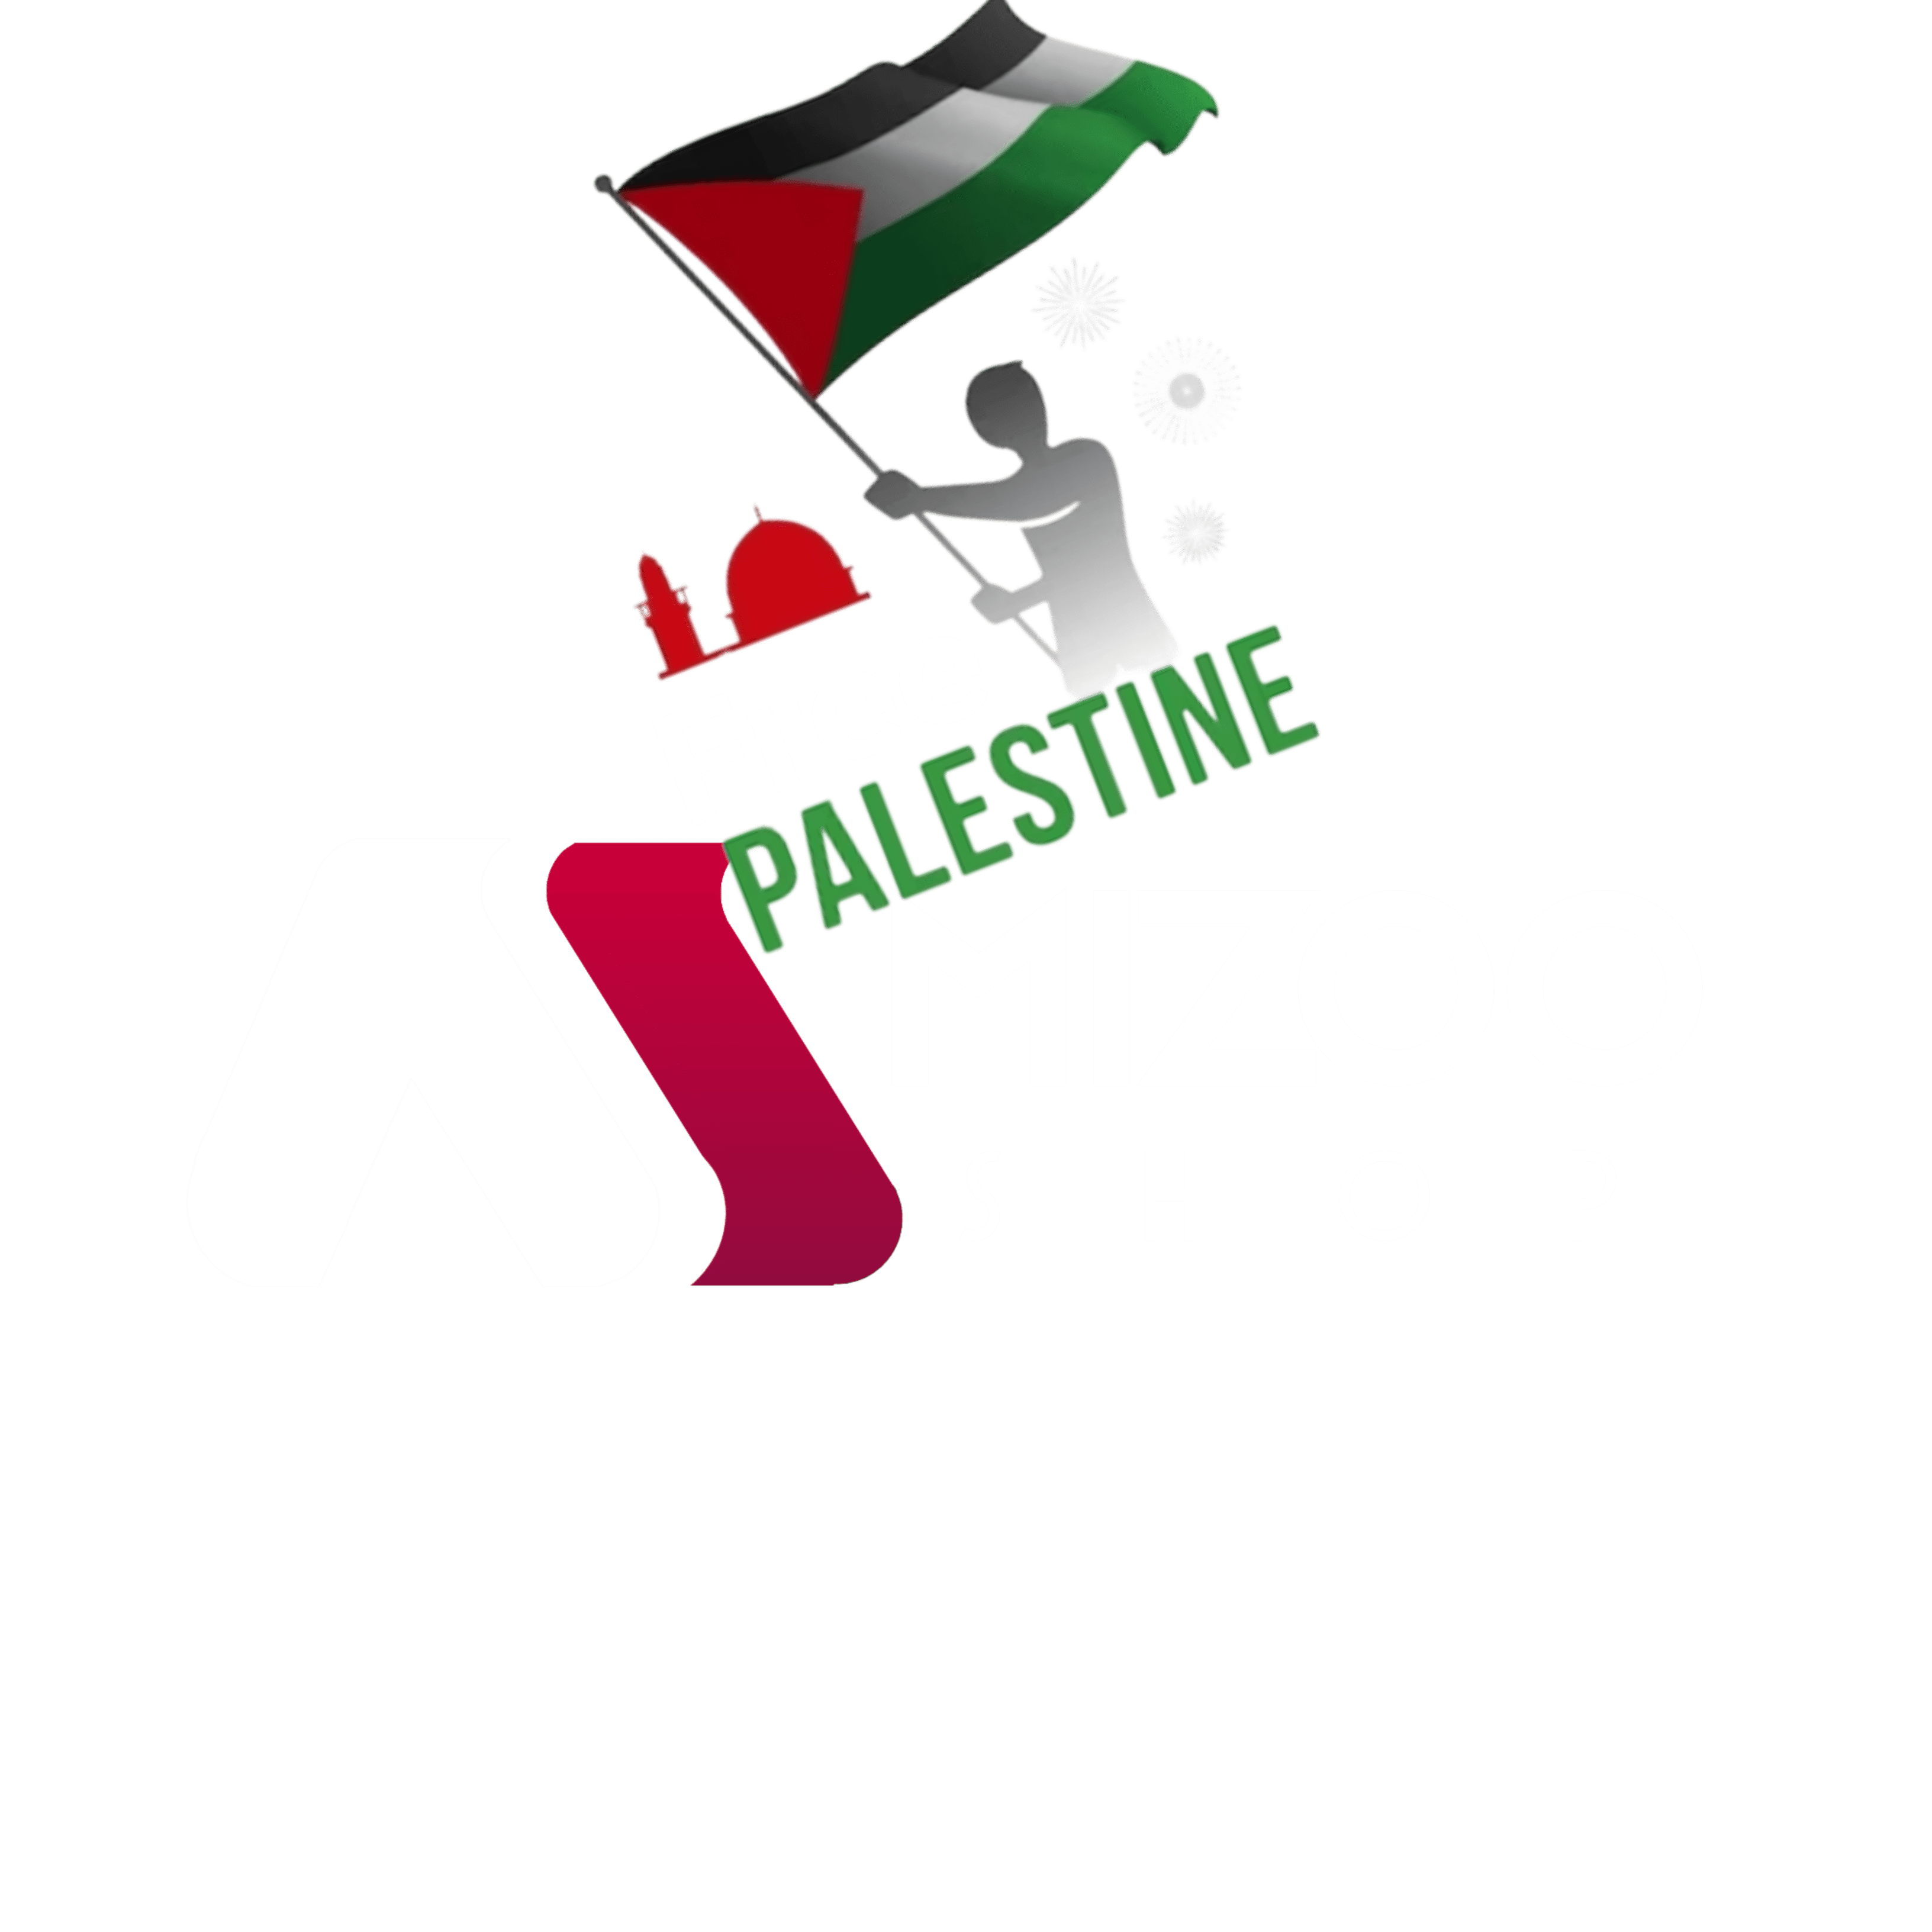 MizooShop